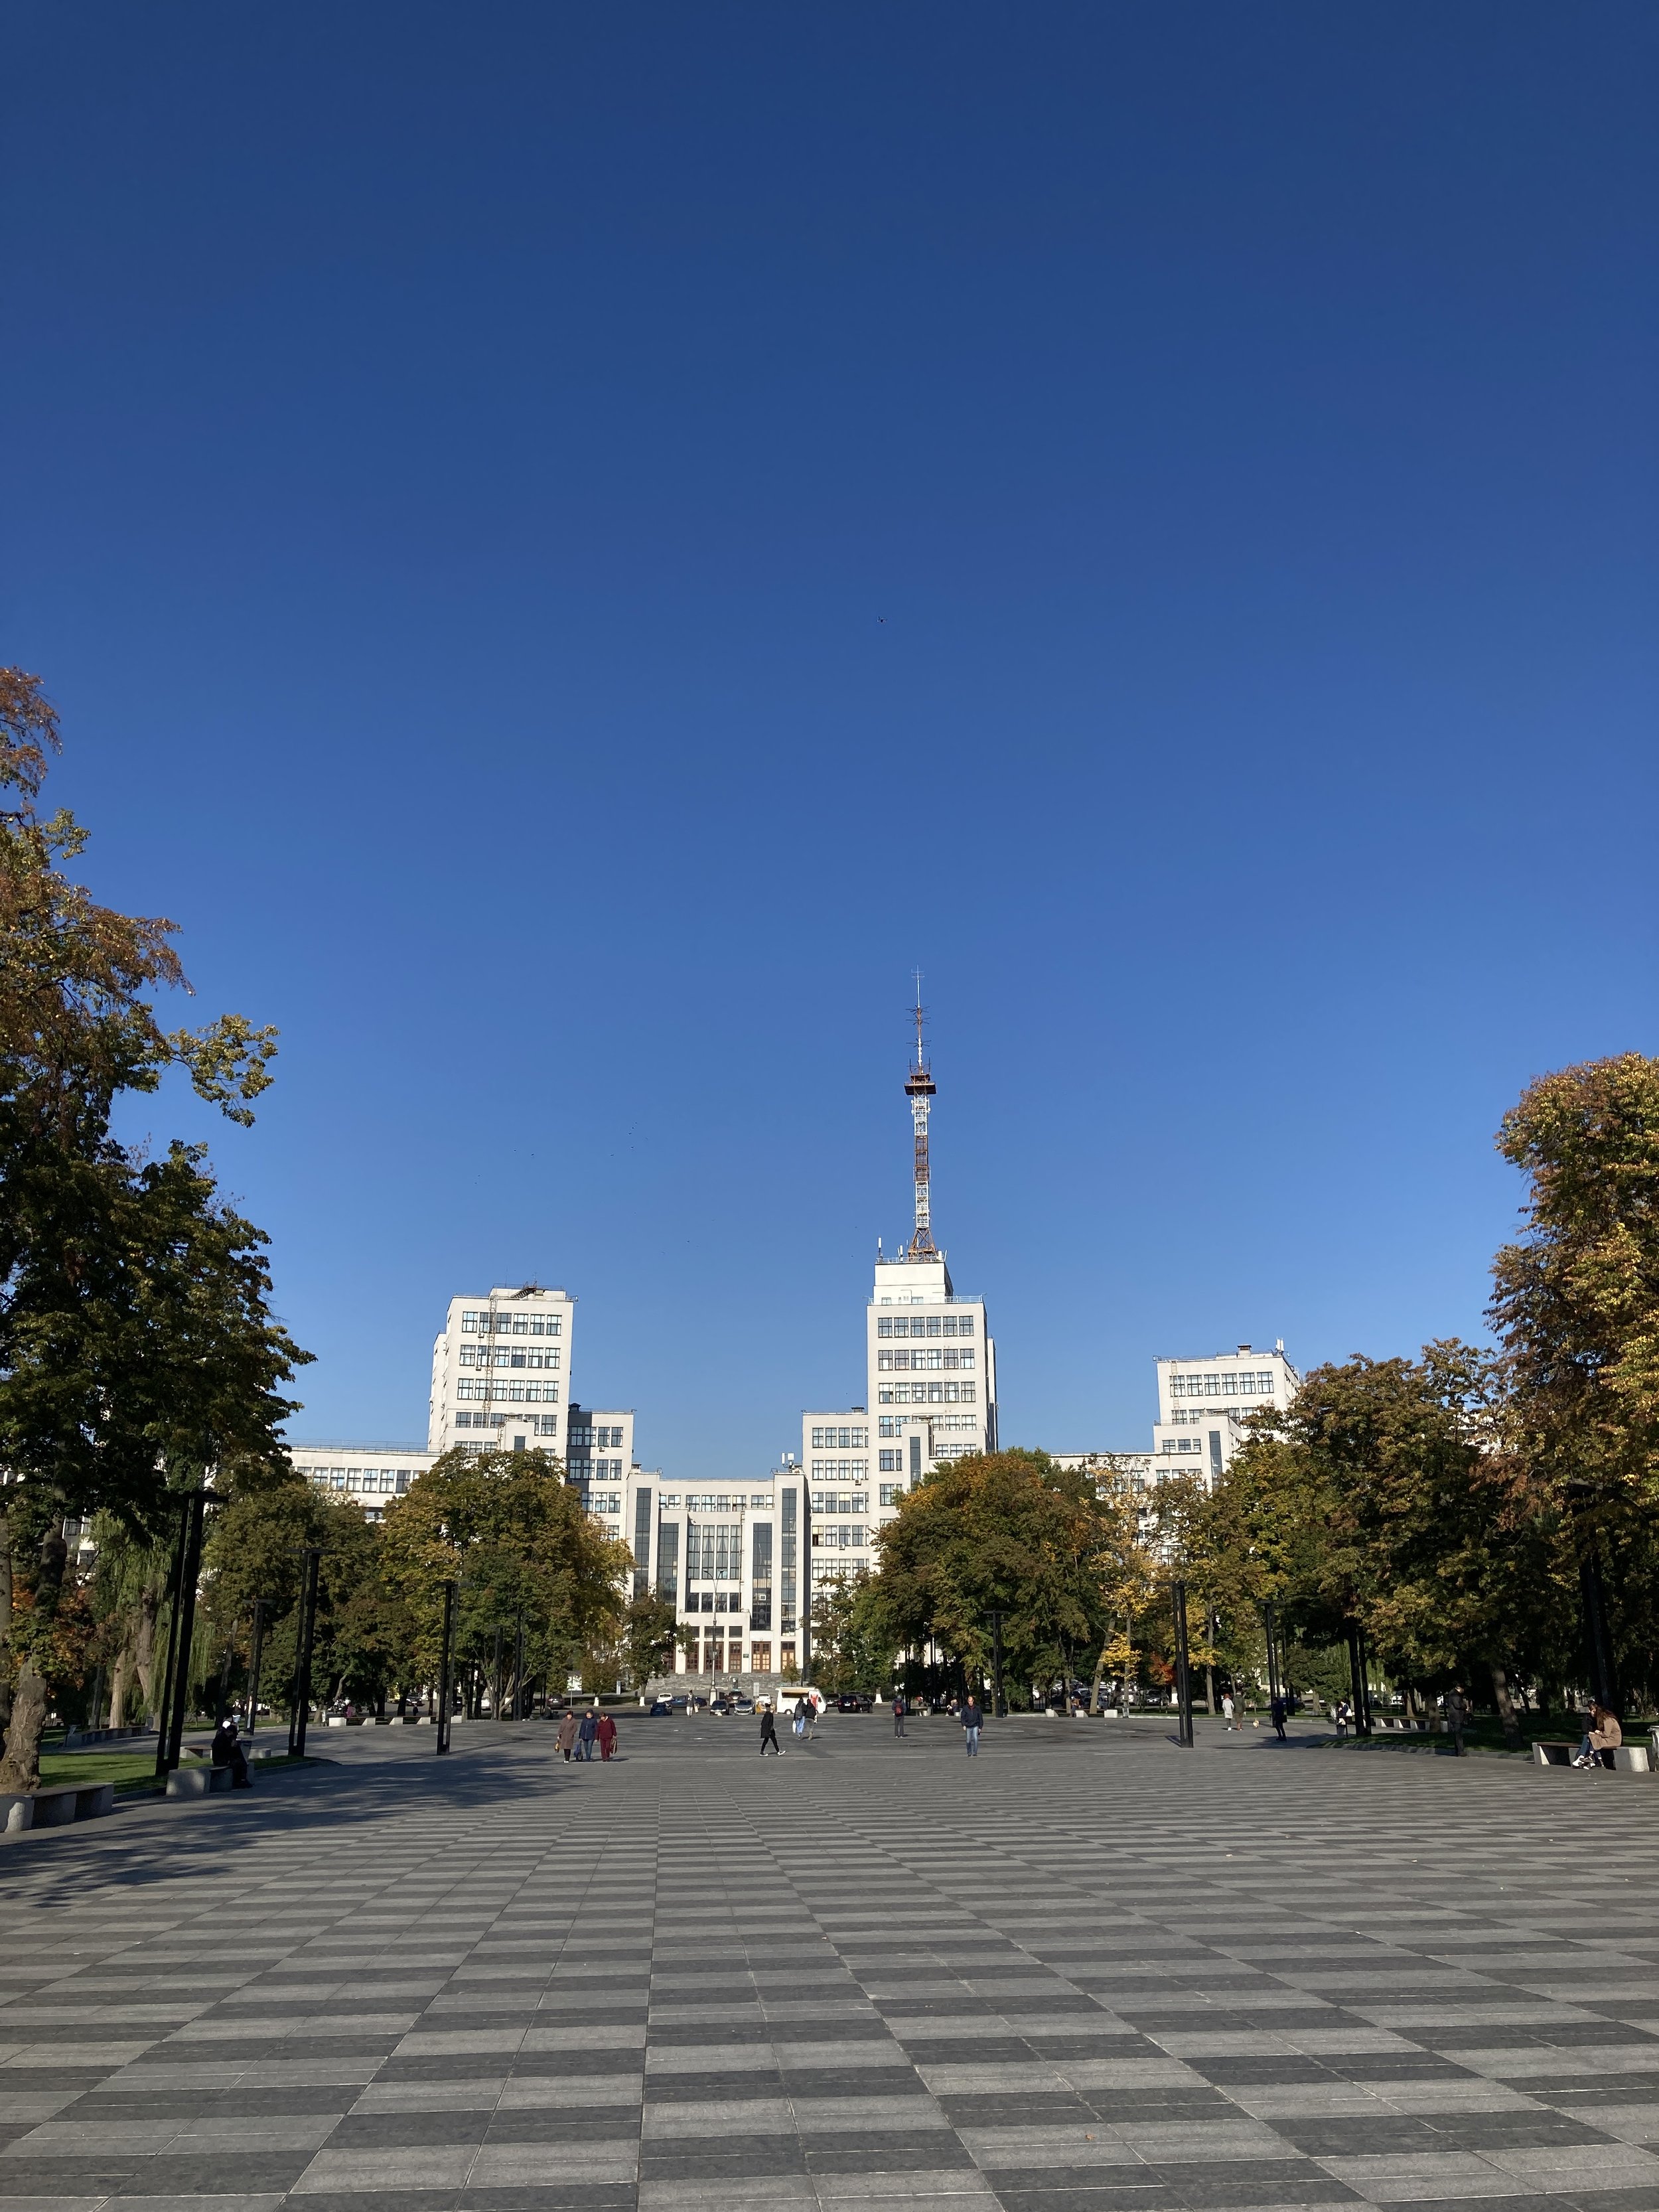 Kharkiv / Ukraine, September 2021